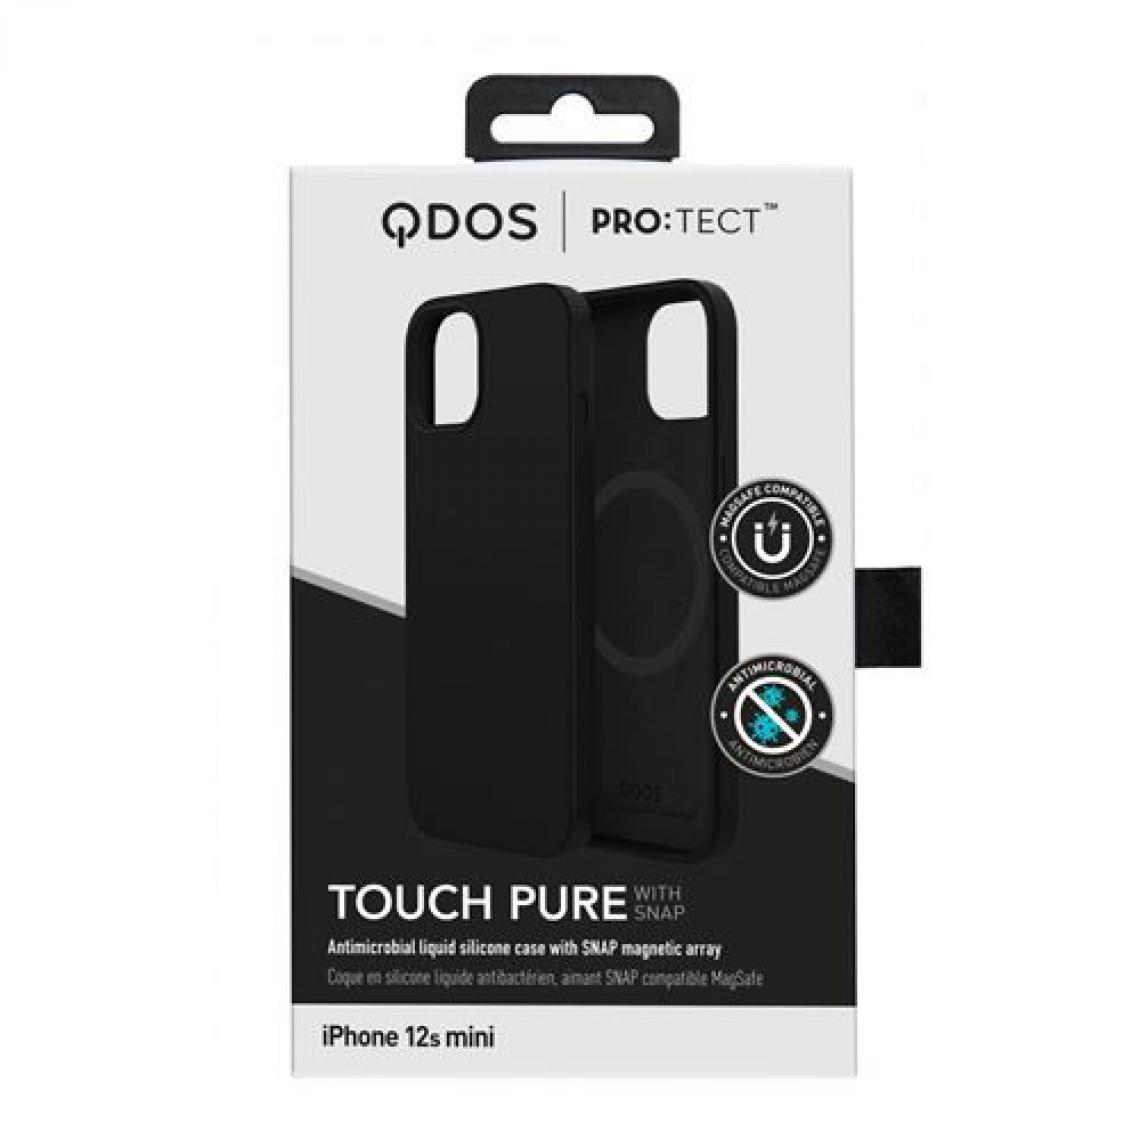 Qdos - Coque de protection pour iPhone 12s mini Qdos Touch Pure Snap Noir - Coque, étui smartphone